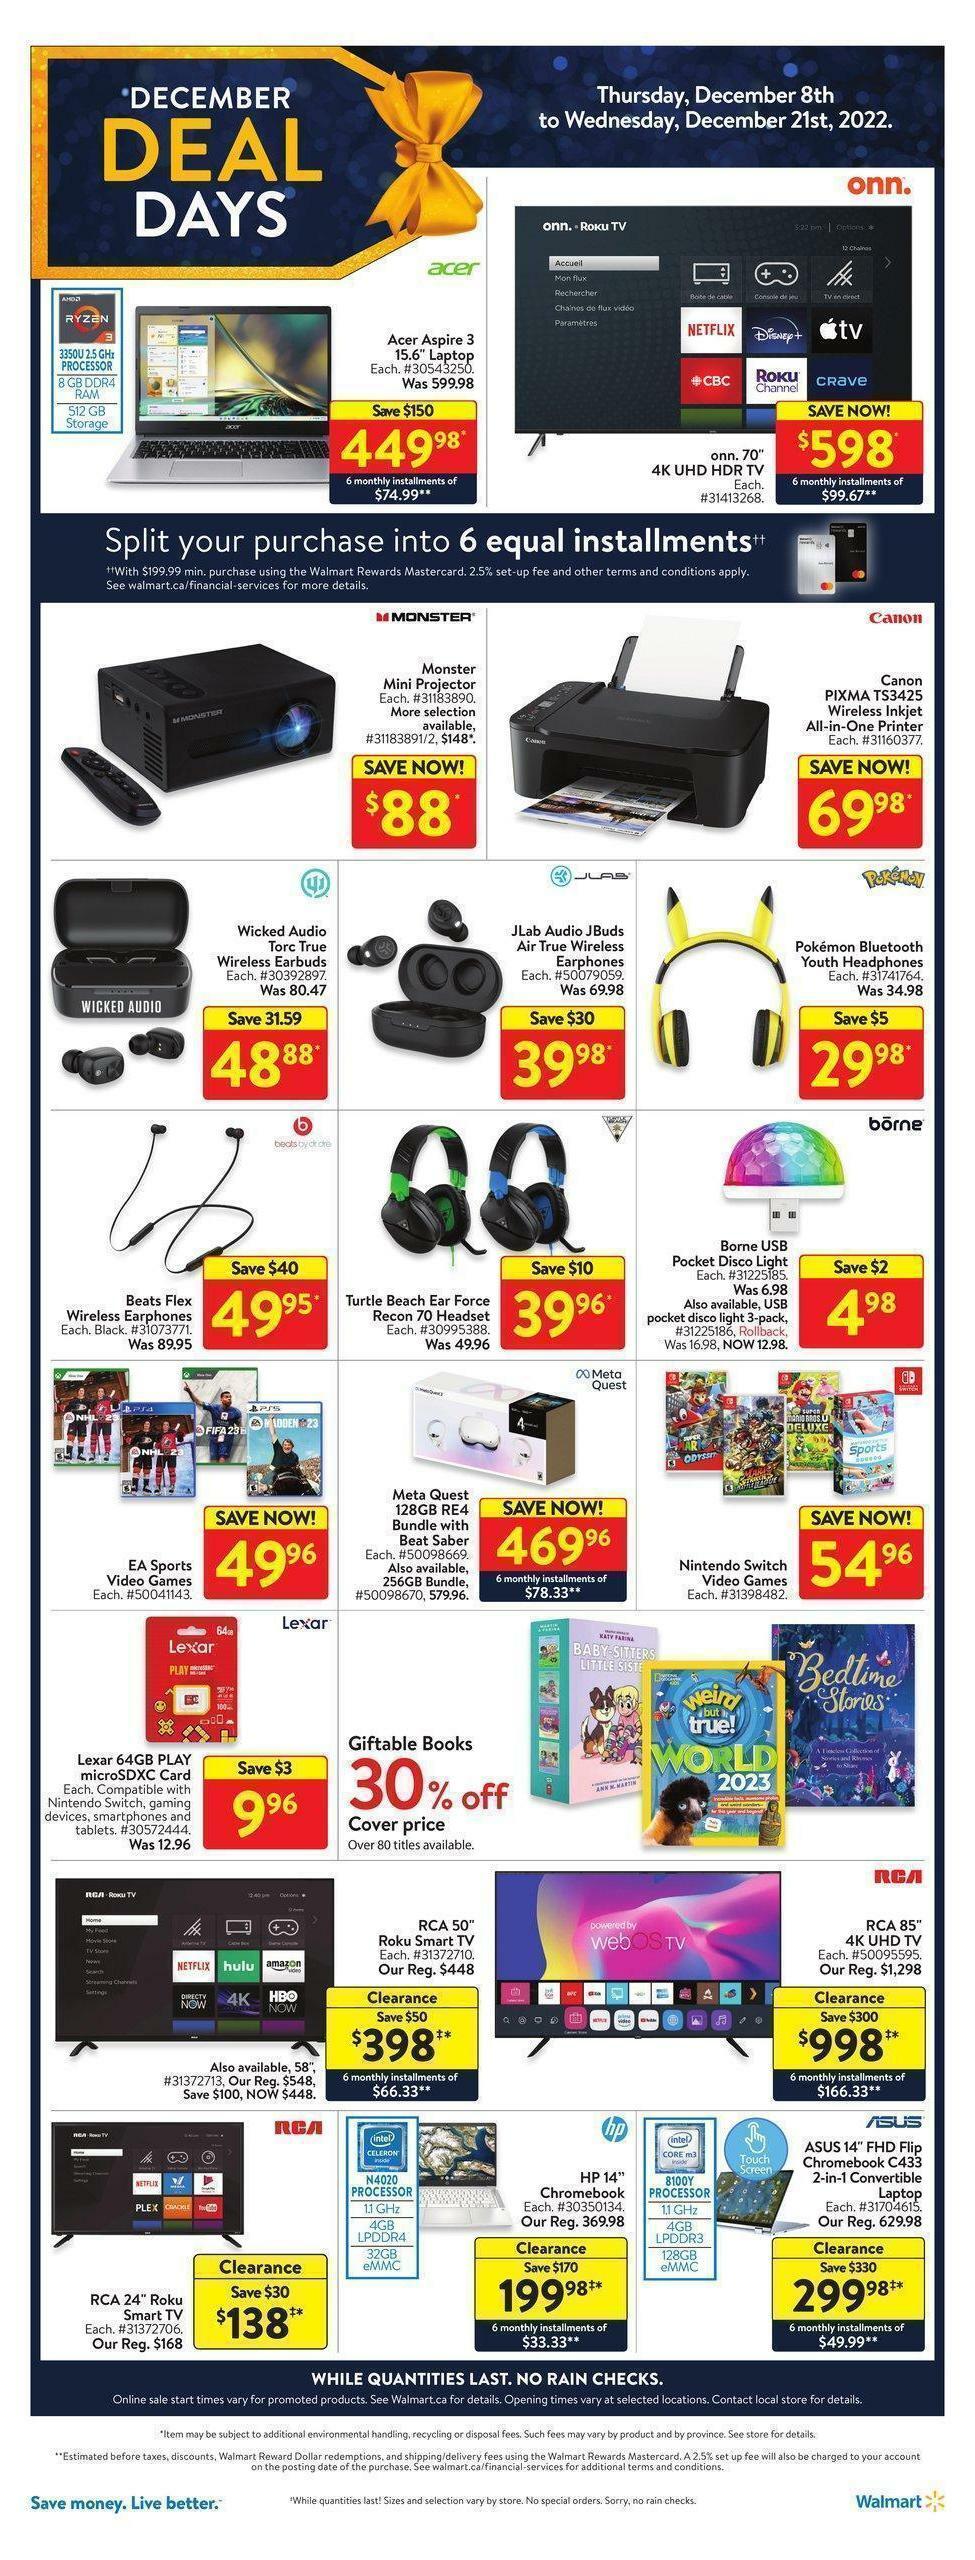 Walmart December Deal Days Flyer from December 8